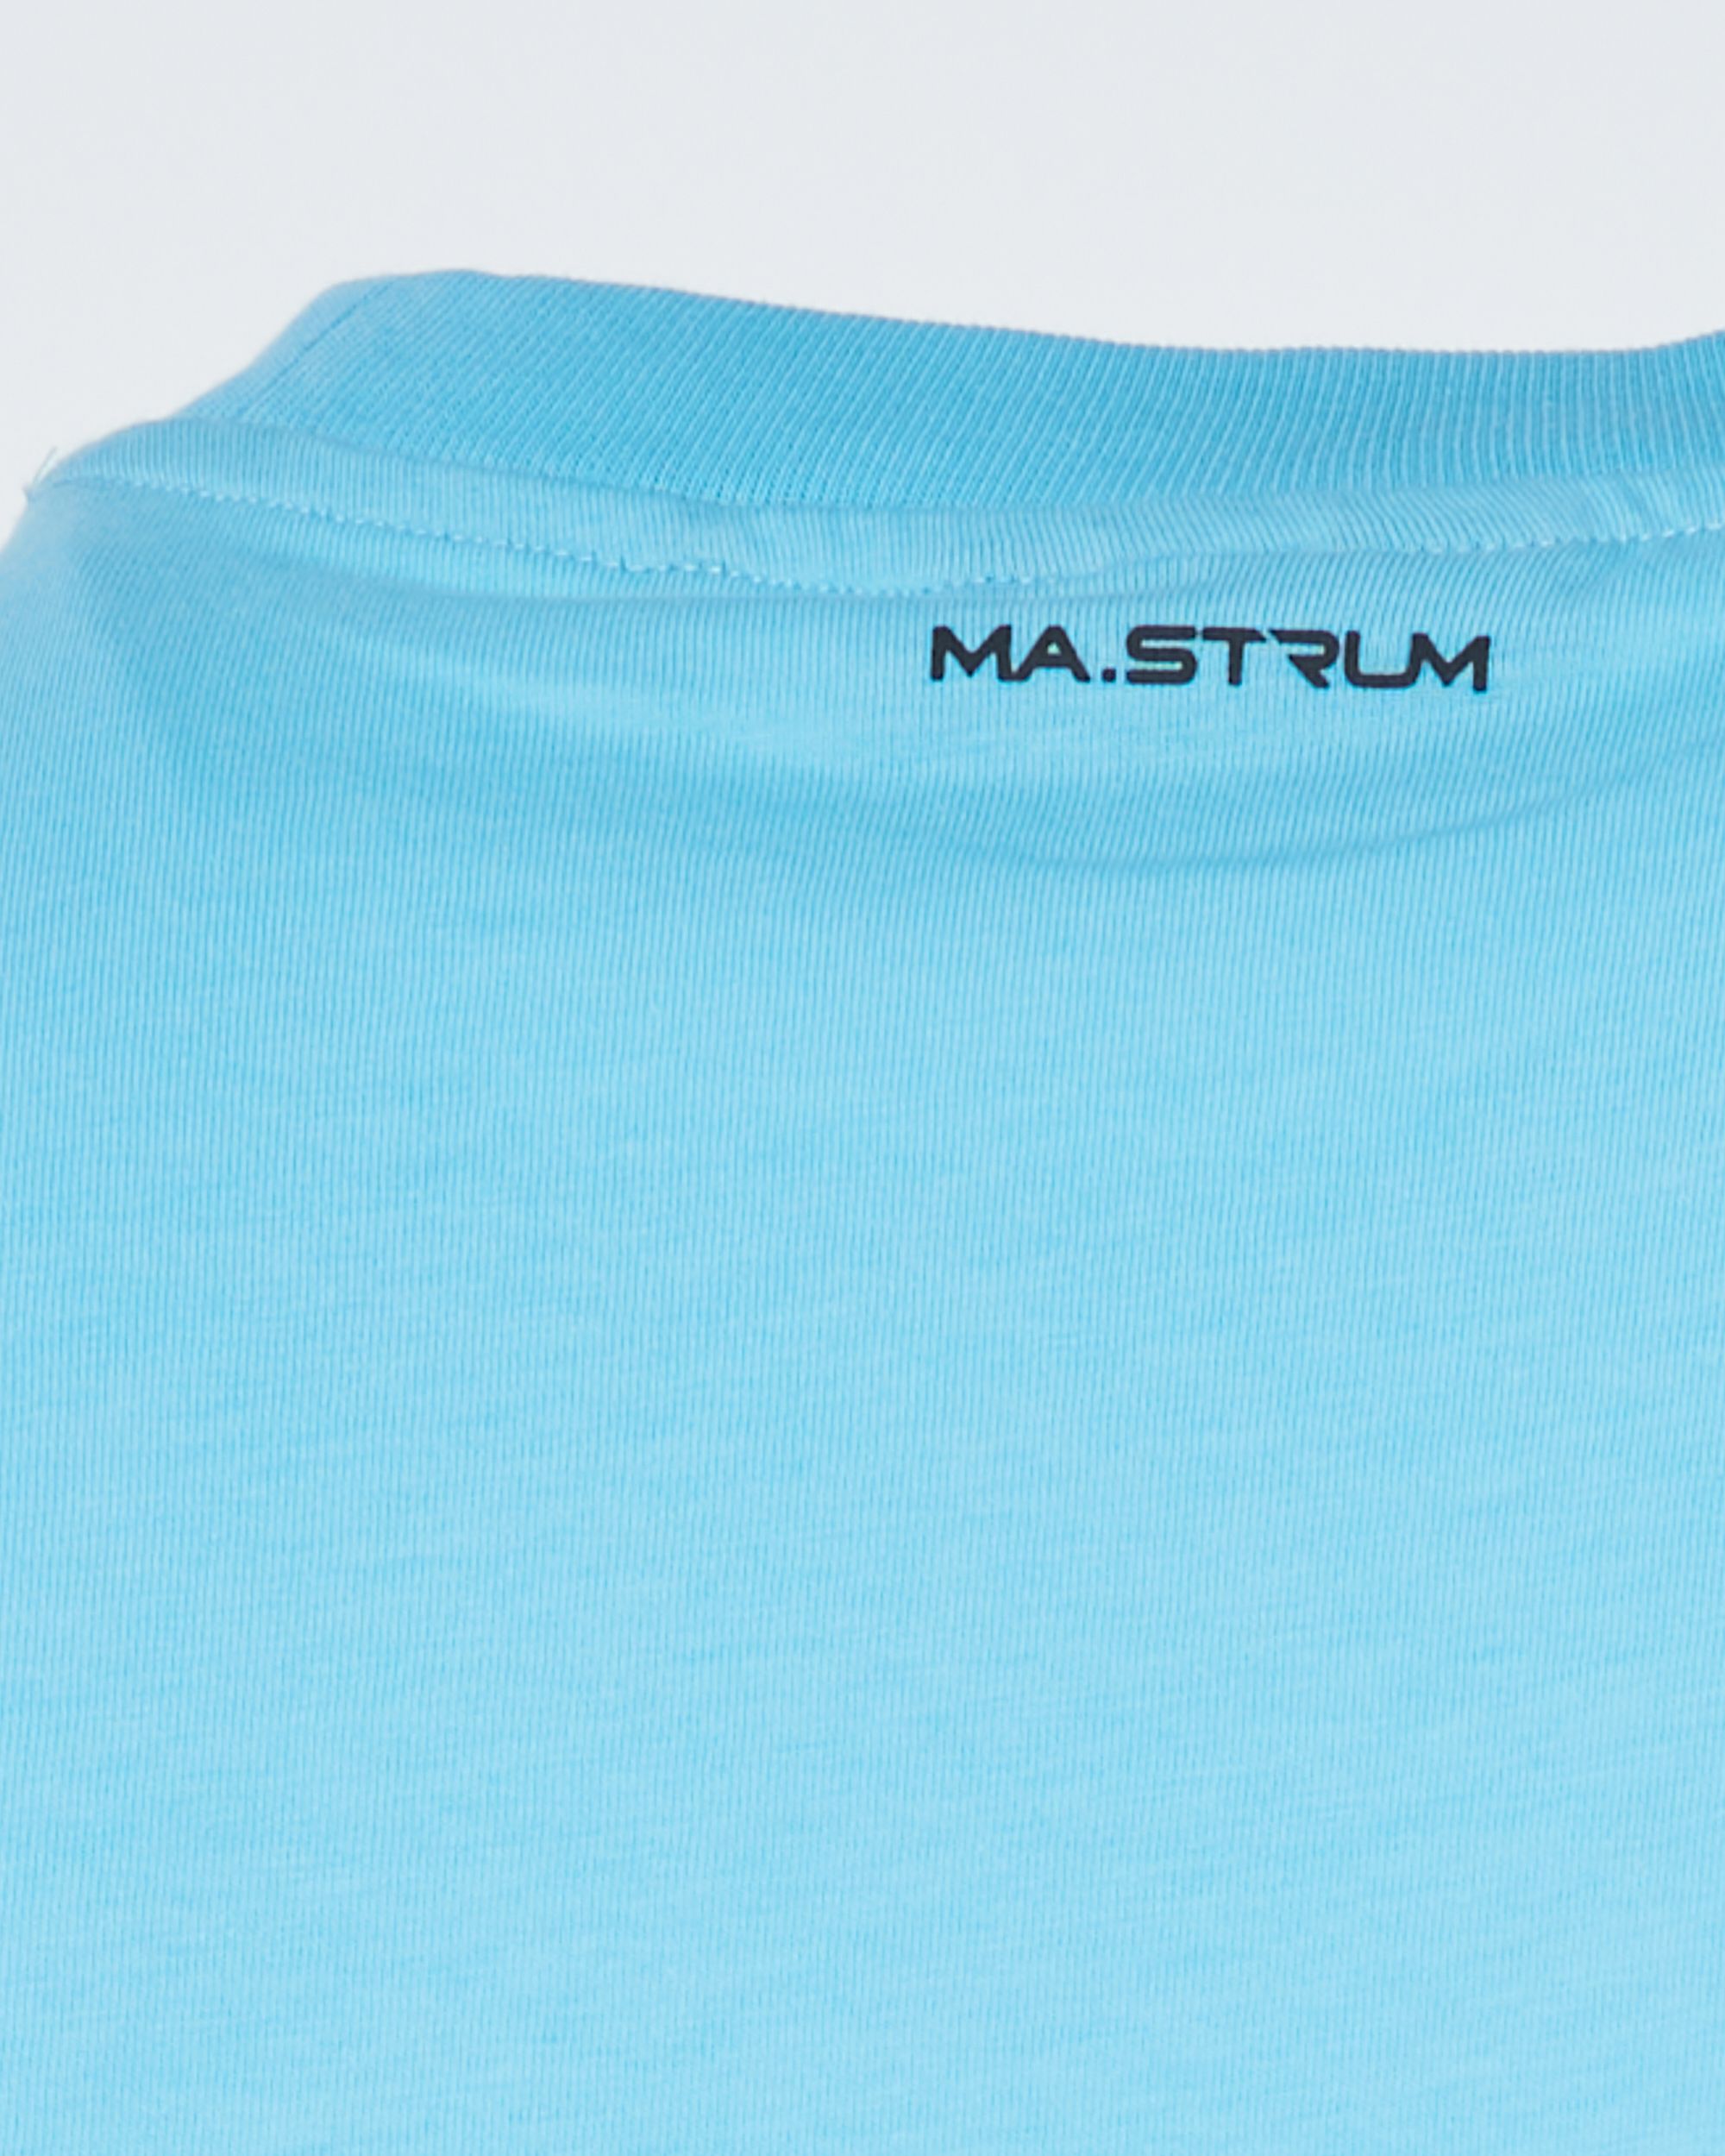 MA.STRUM T-shirt KM Licht blauw 083692-001-L